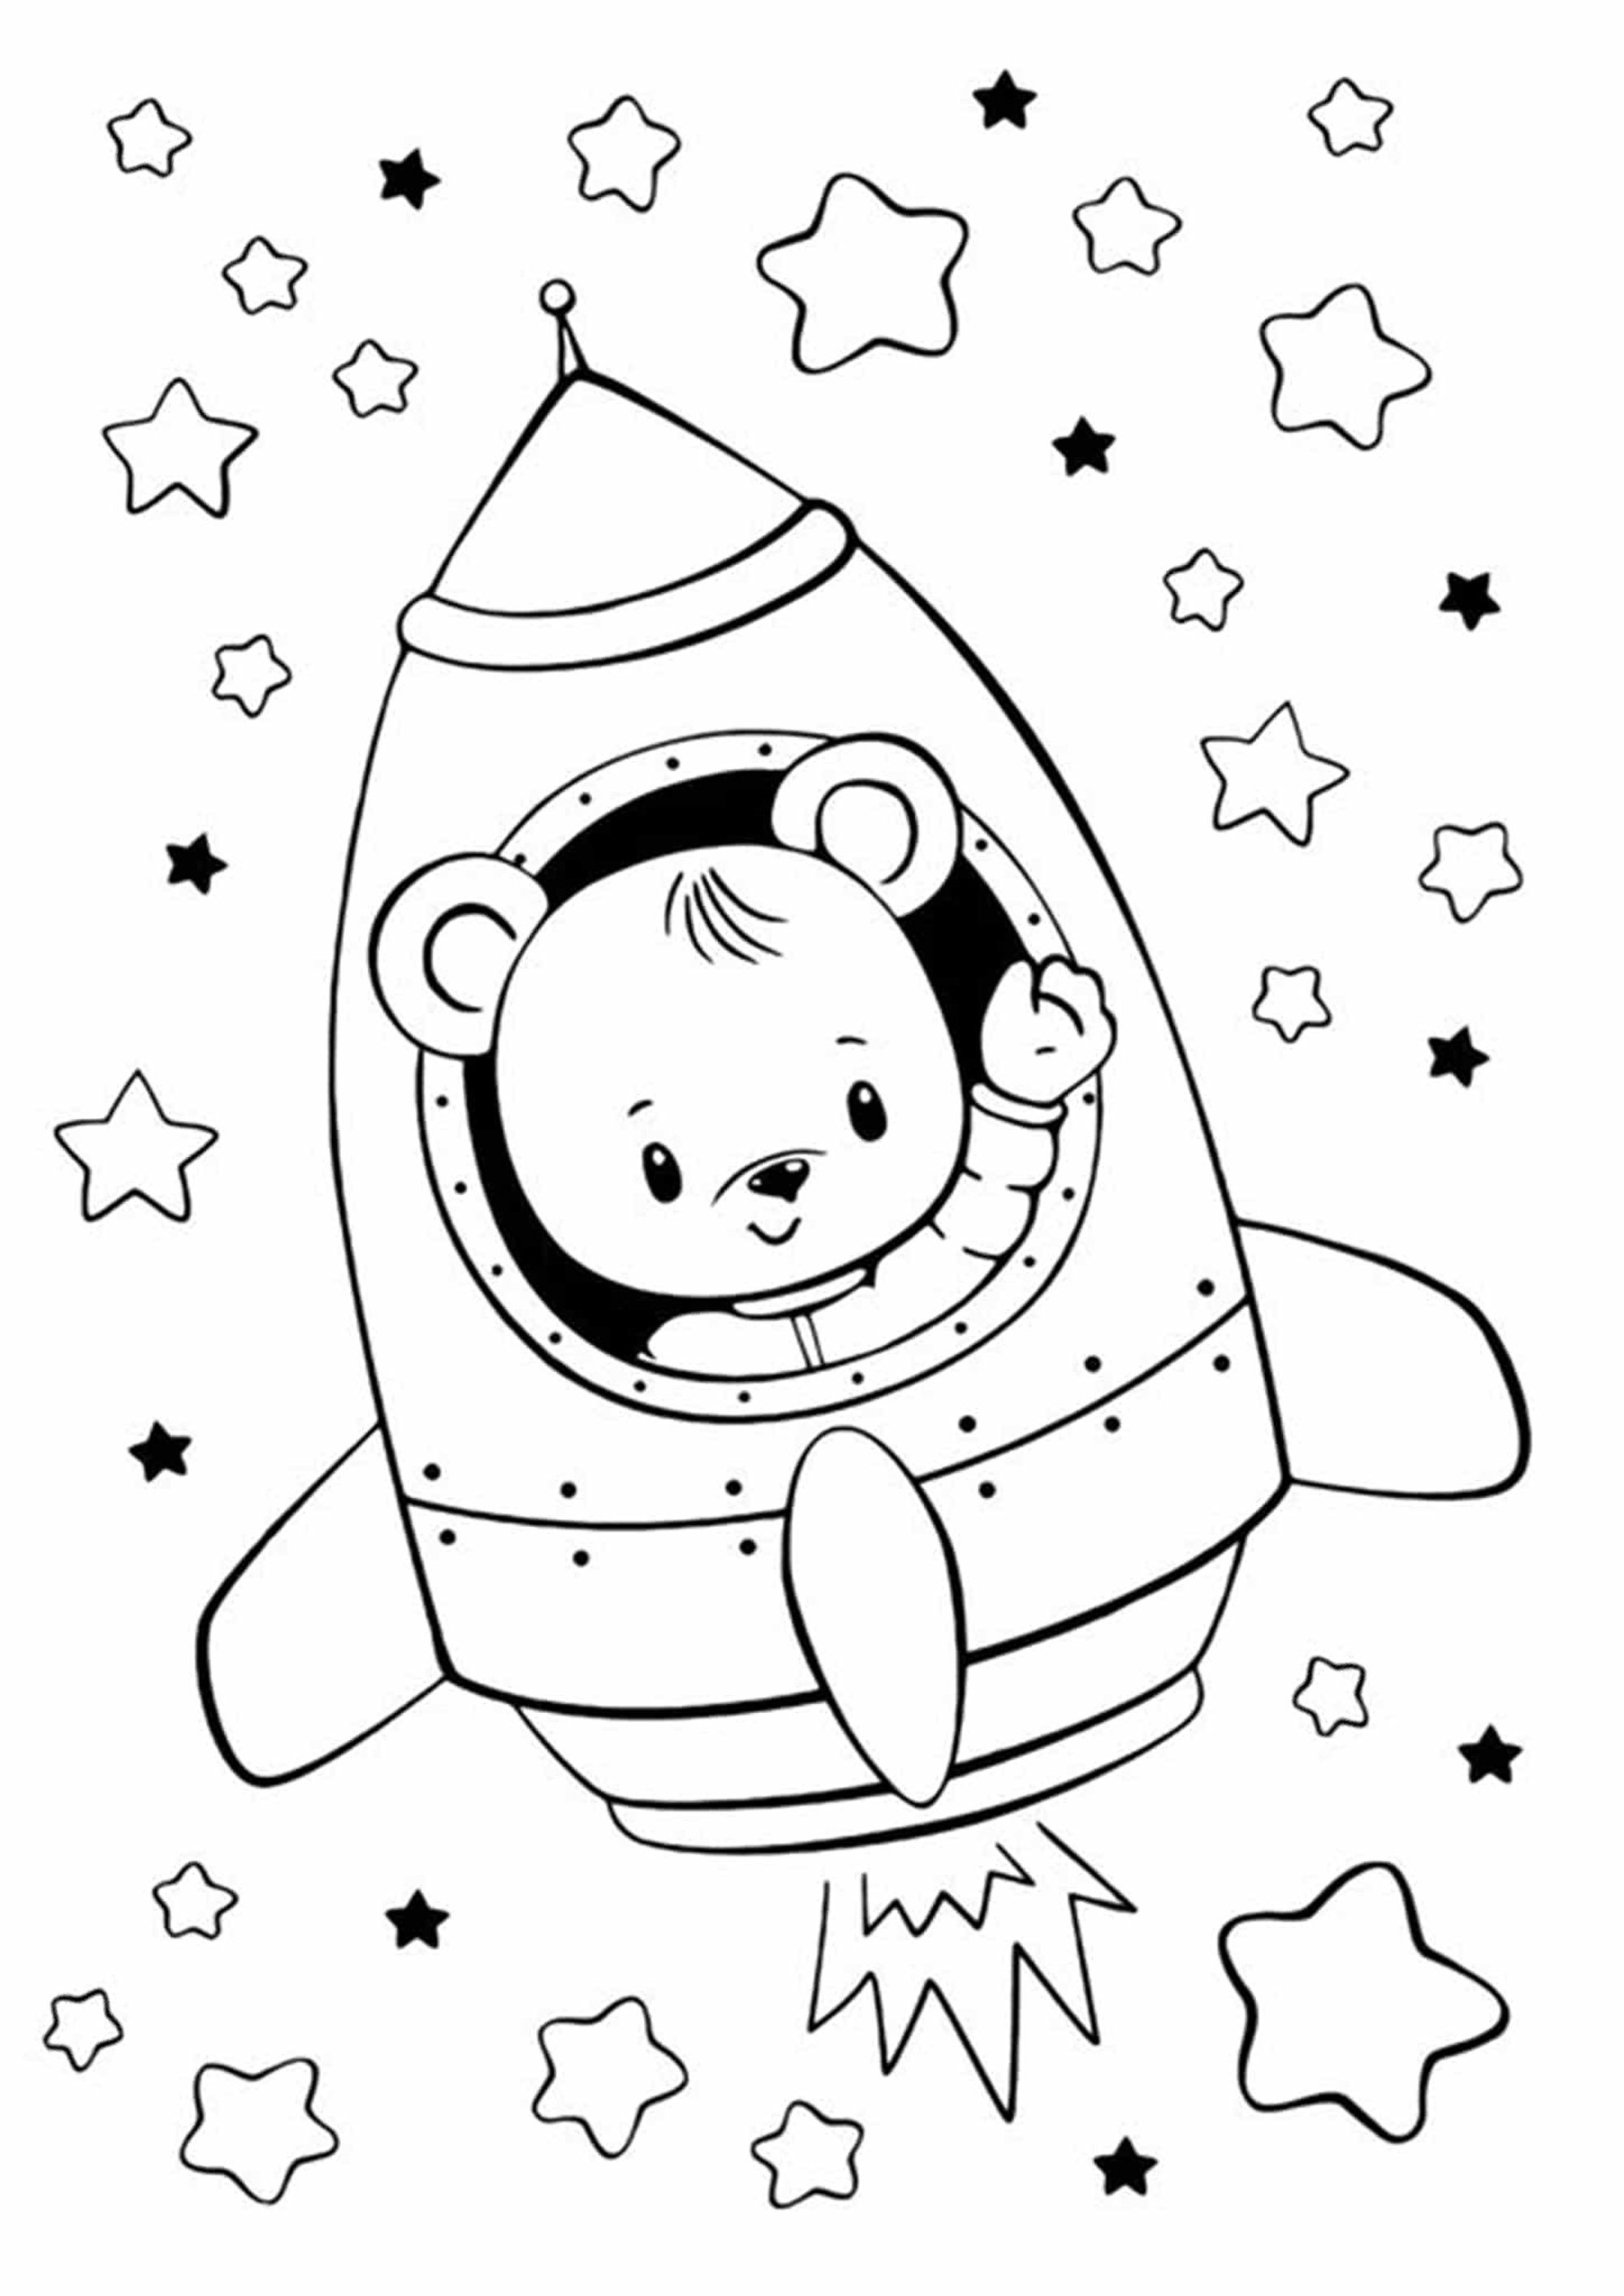 Urso pequeno num foguetão, pronto para explorar o espaço